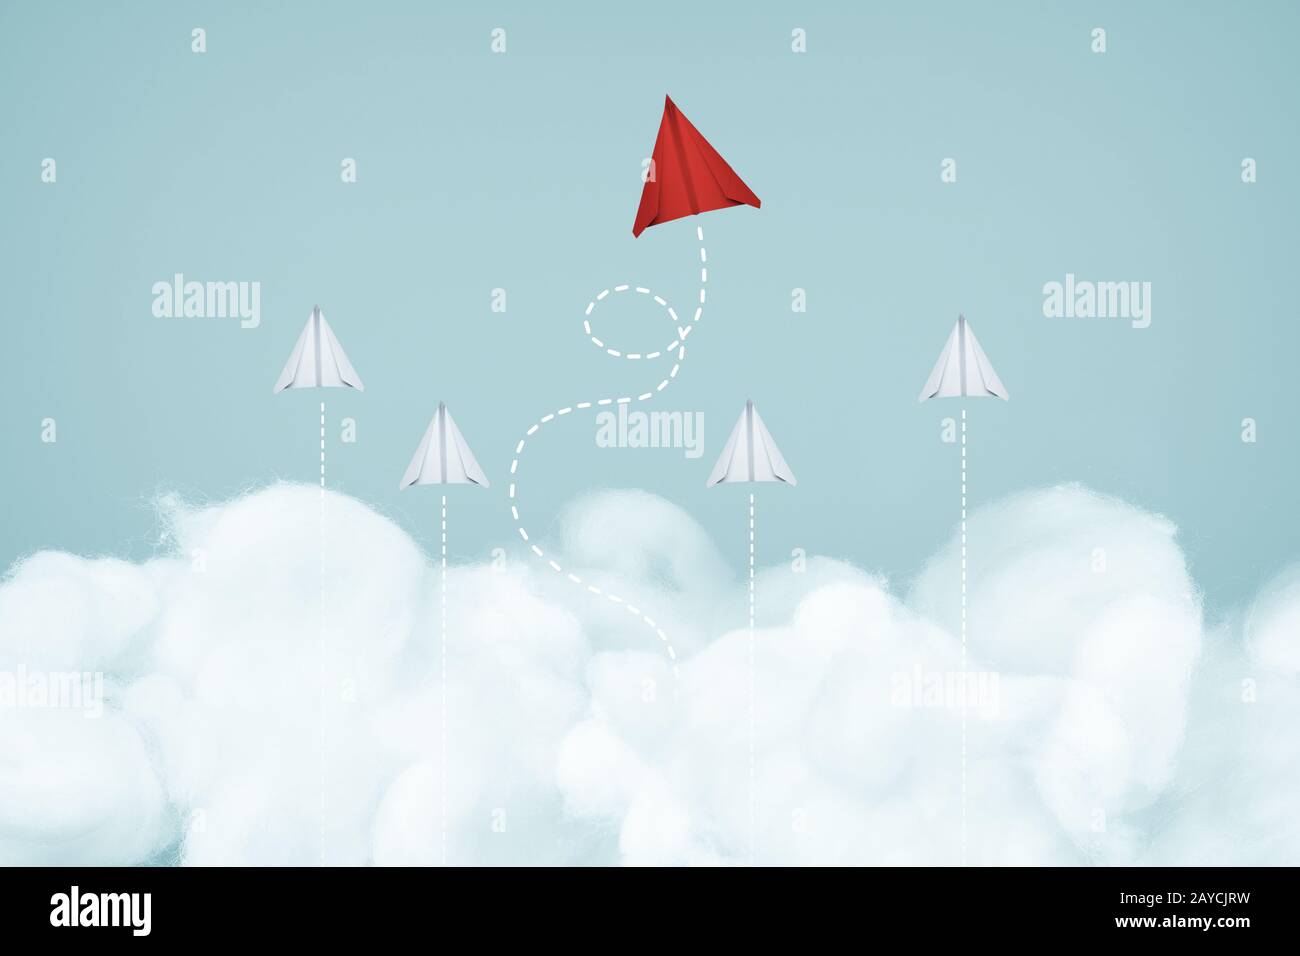 Ein einzigartiges rotes Flugzeug führt die Gruppe des weißen Papierflugzeugs am blauen Himmel und am Wolkenhintergrund an. Geschäfts- oder Designcrea Stockfoto